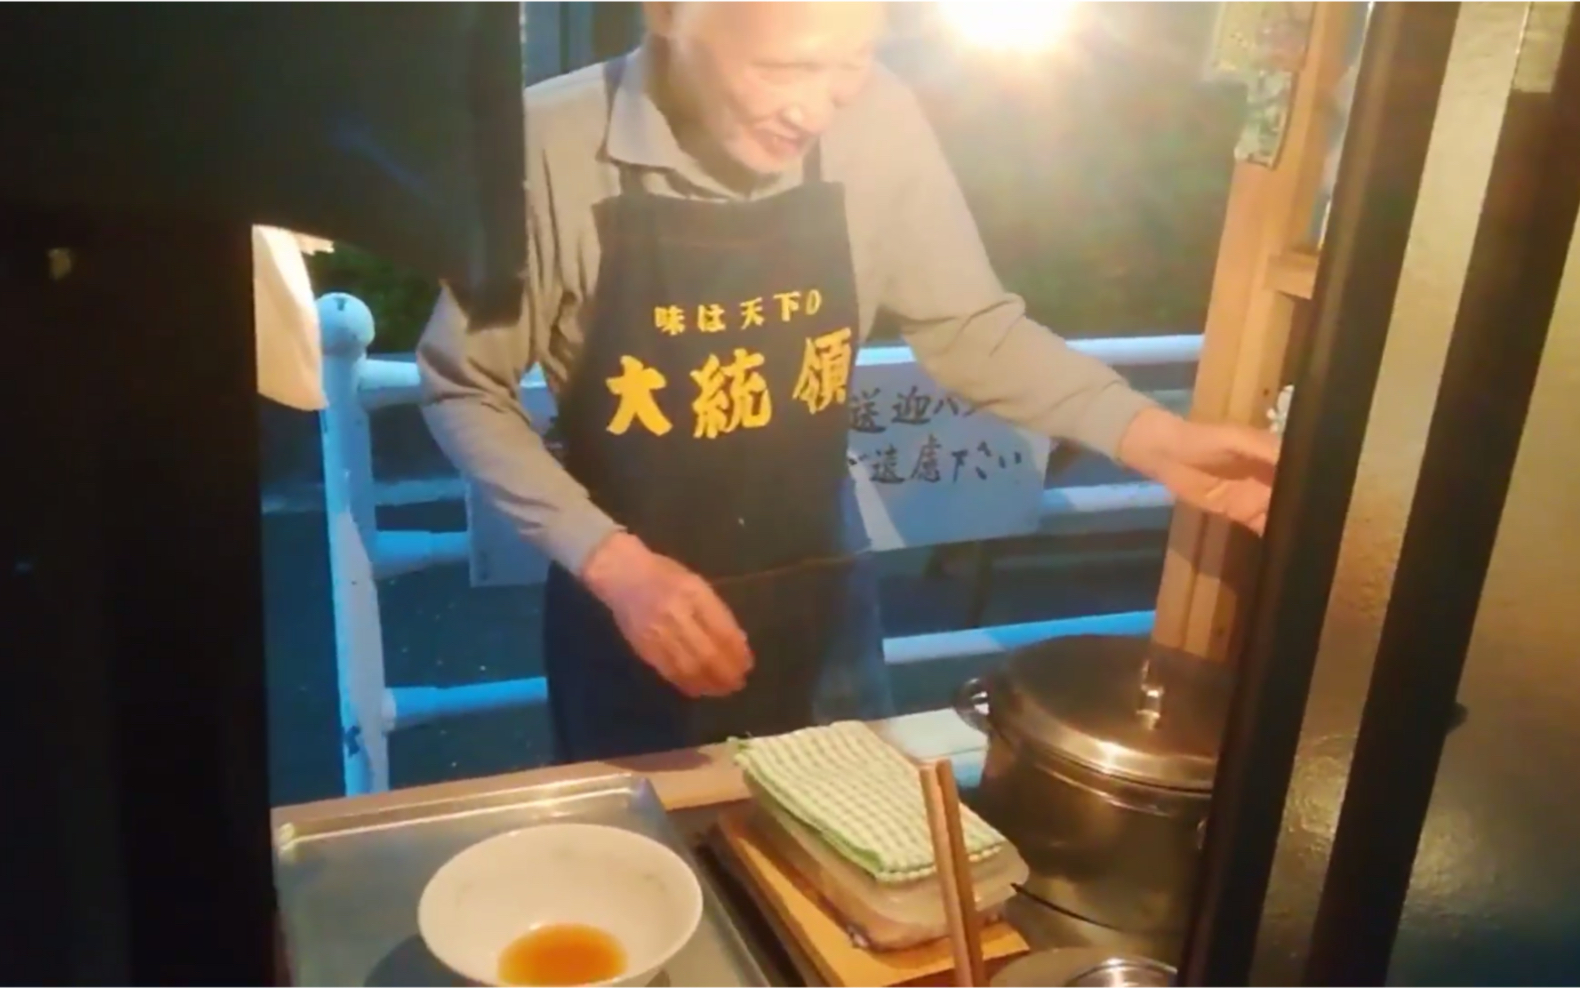 【日式街头拉面的老人坚持40年 就为煮一碗面】这位老人从年轻到老都在煮面 现在力不从心了 想退休了